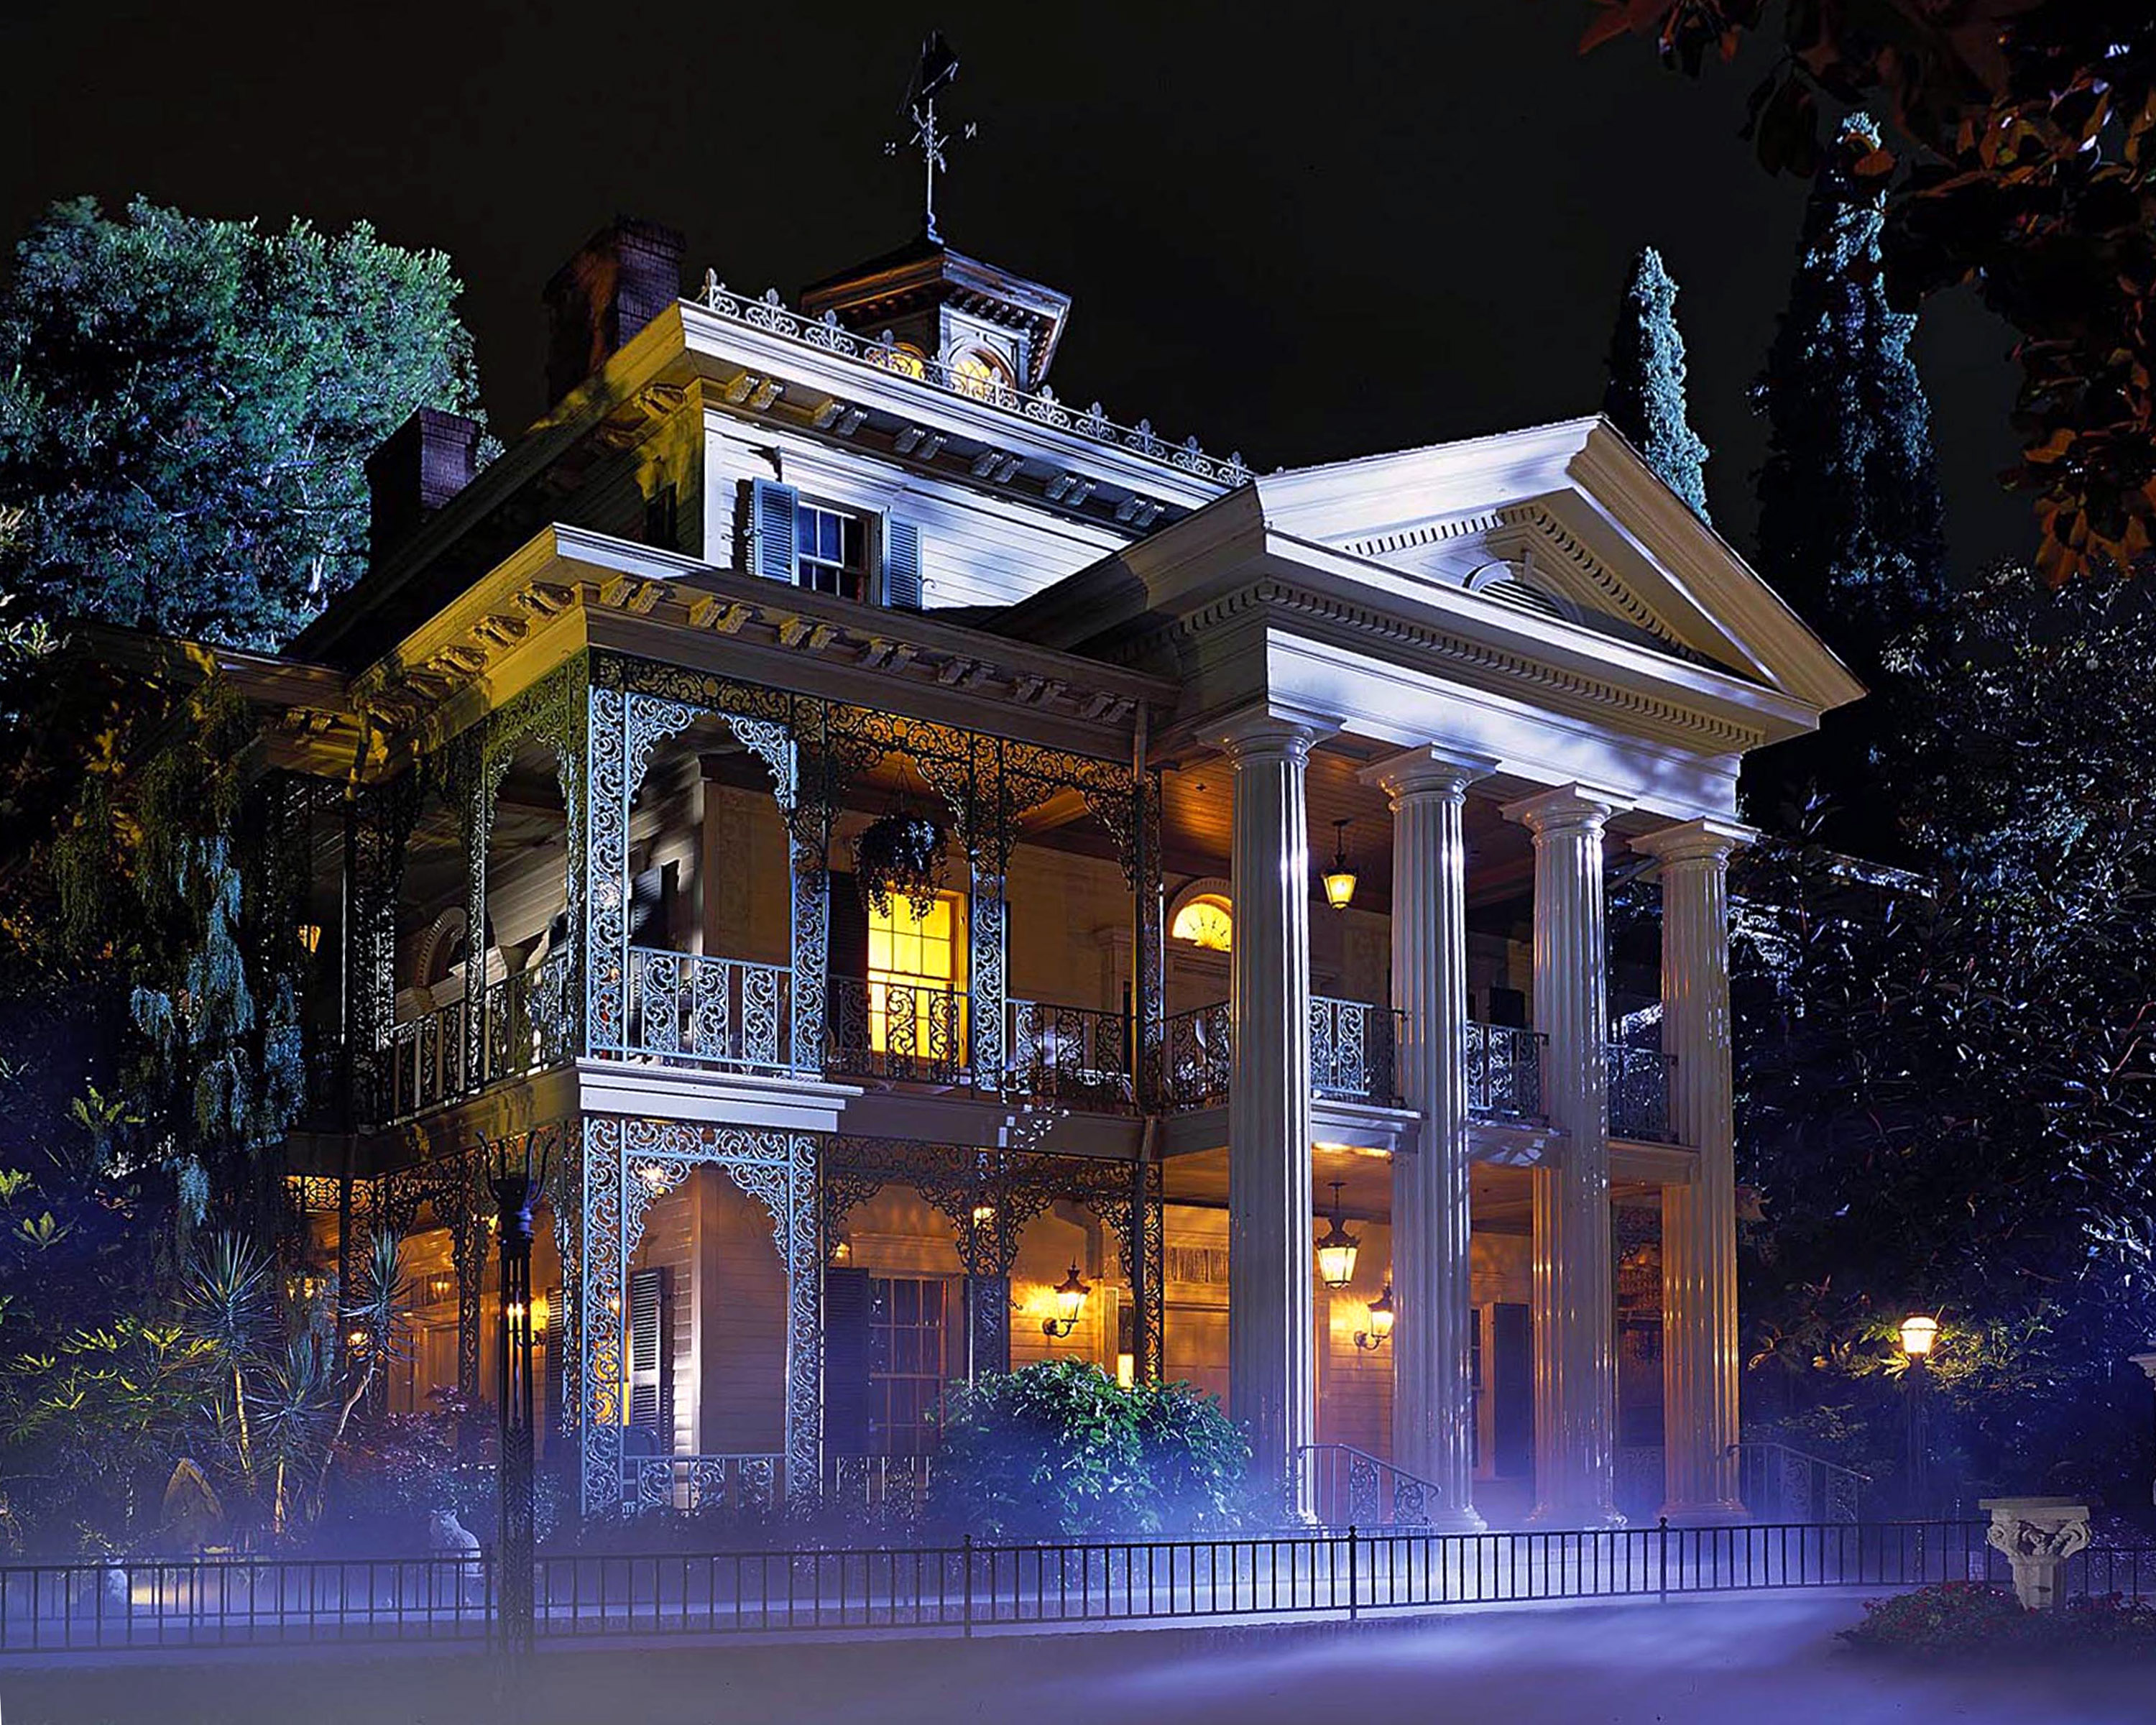 Развлечения дома. Особняк с привидениями в Диснейленде. Disneyland Haunted Mansion аттракцион. Призрачное поместье Диснейленд в Париже. Особняк с привидениями Диснейленда в Париже.